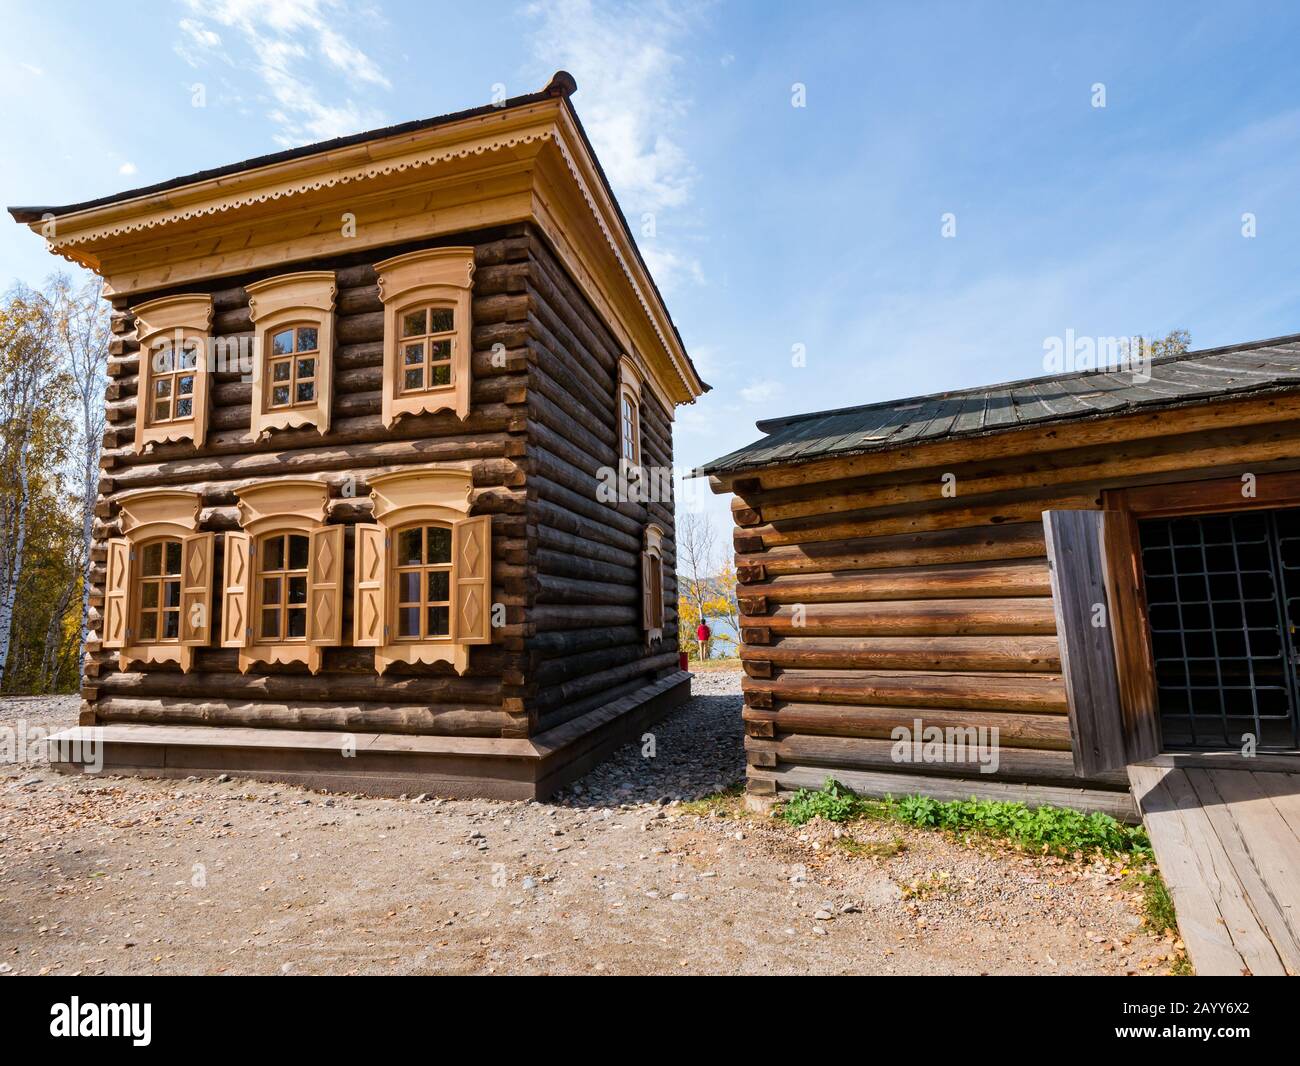 Altmodisches Holzhaus im traditionellen Stil mit Fensterläden, Taltsy-Museum für Holzarchitektur, Region Irkutsk, Sibirien, Russland Stockfoto